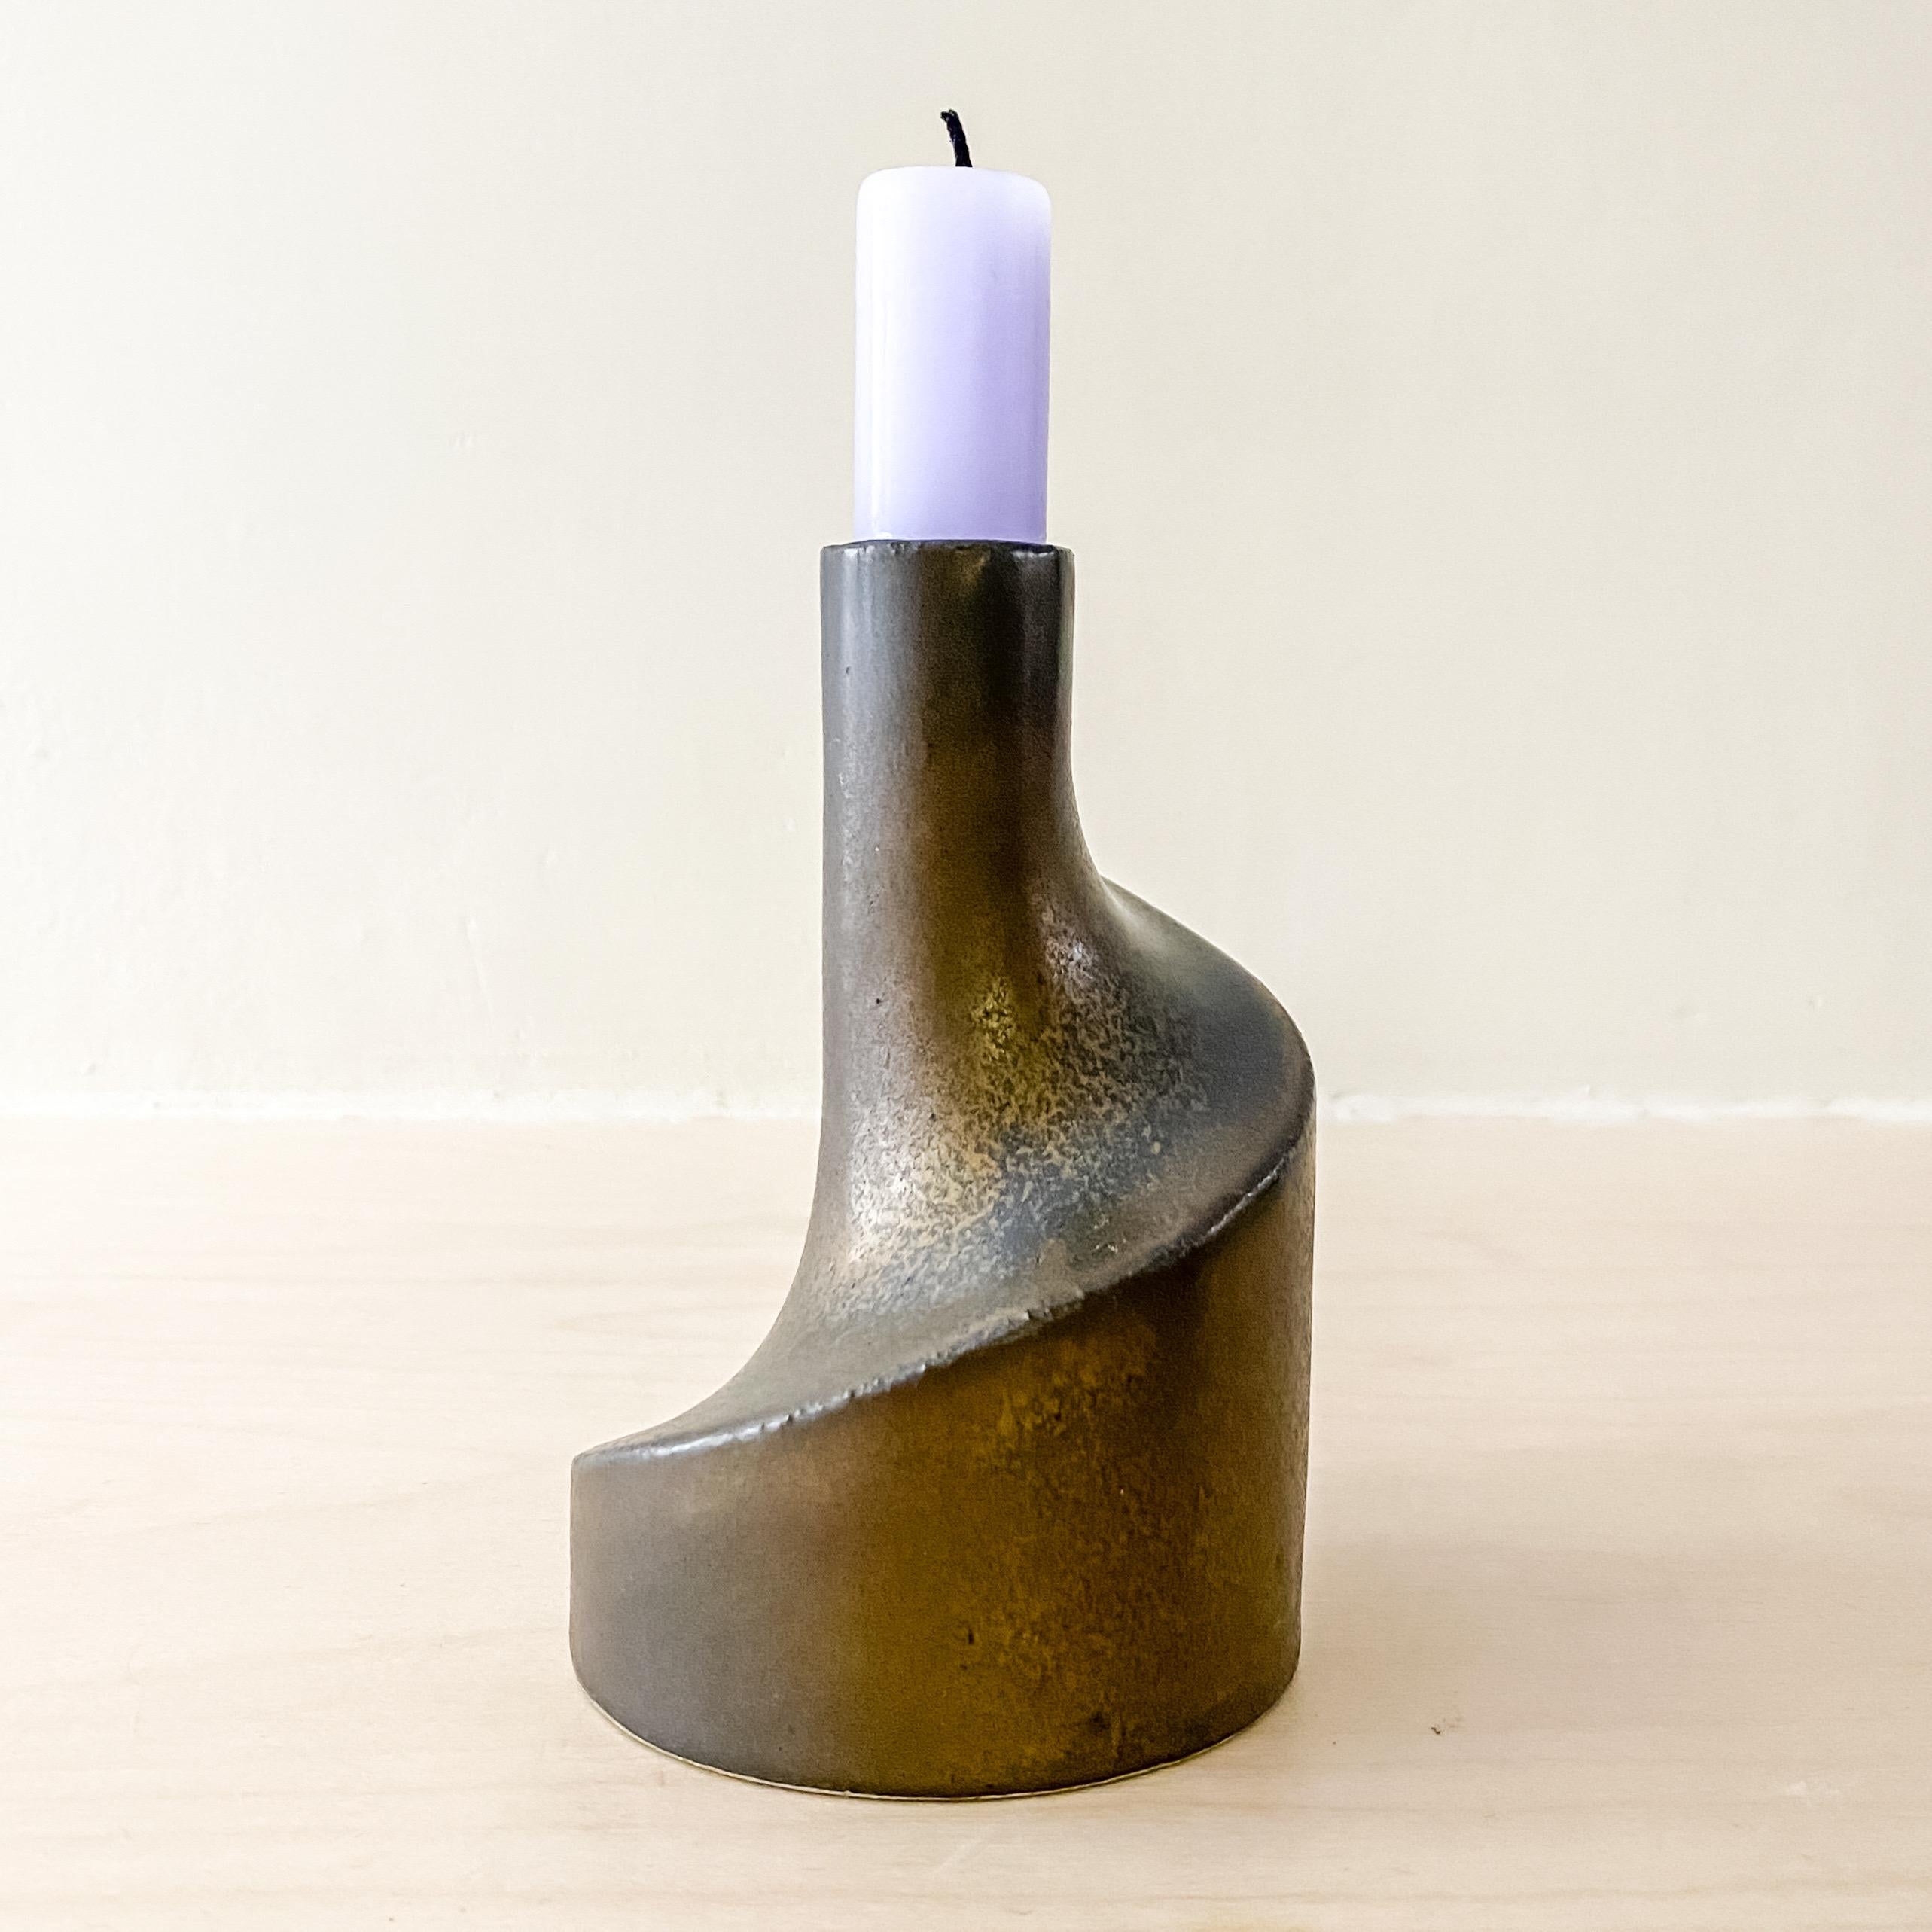 Wunderschöner geometrischer Kerzenhalter des niederländischen Keramikers Jan van der Vaart. Skulpturale Komposition in einer dunklen Bronzeglasur. Jan van der Vaart gehört zu der ersten Generation von Keramikkünstlern, die in den 1950er Jahren die